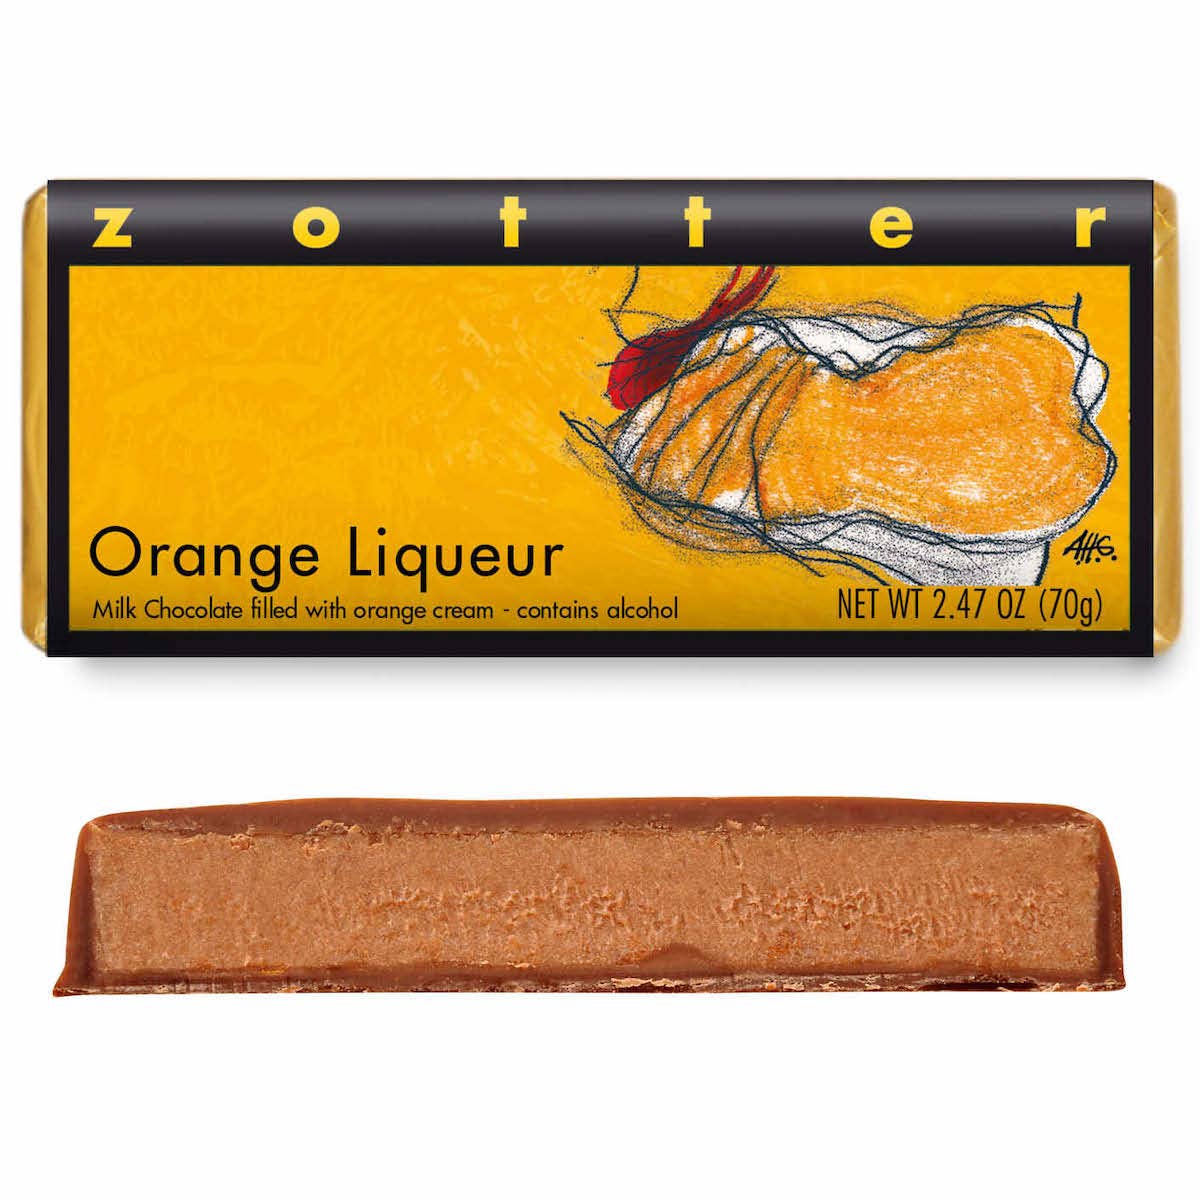 Orange Liqueur (Hand-scooped Chocolate)